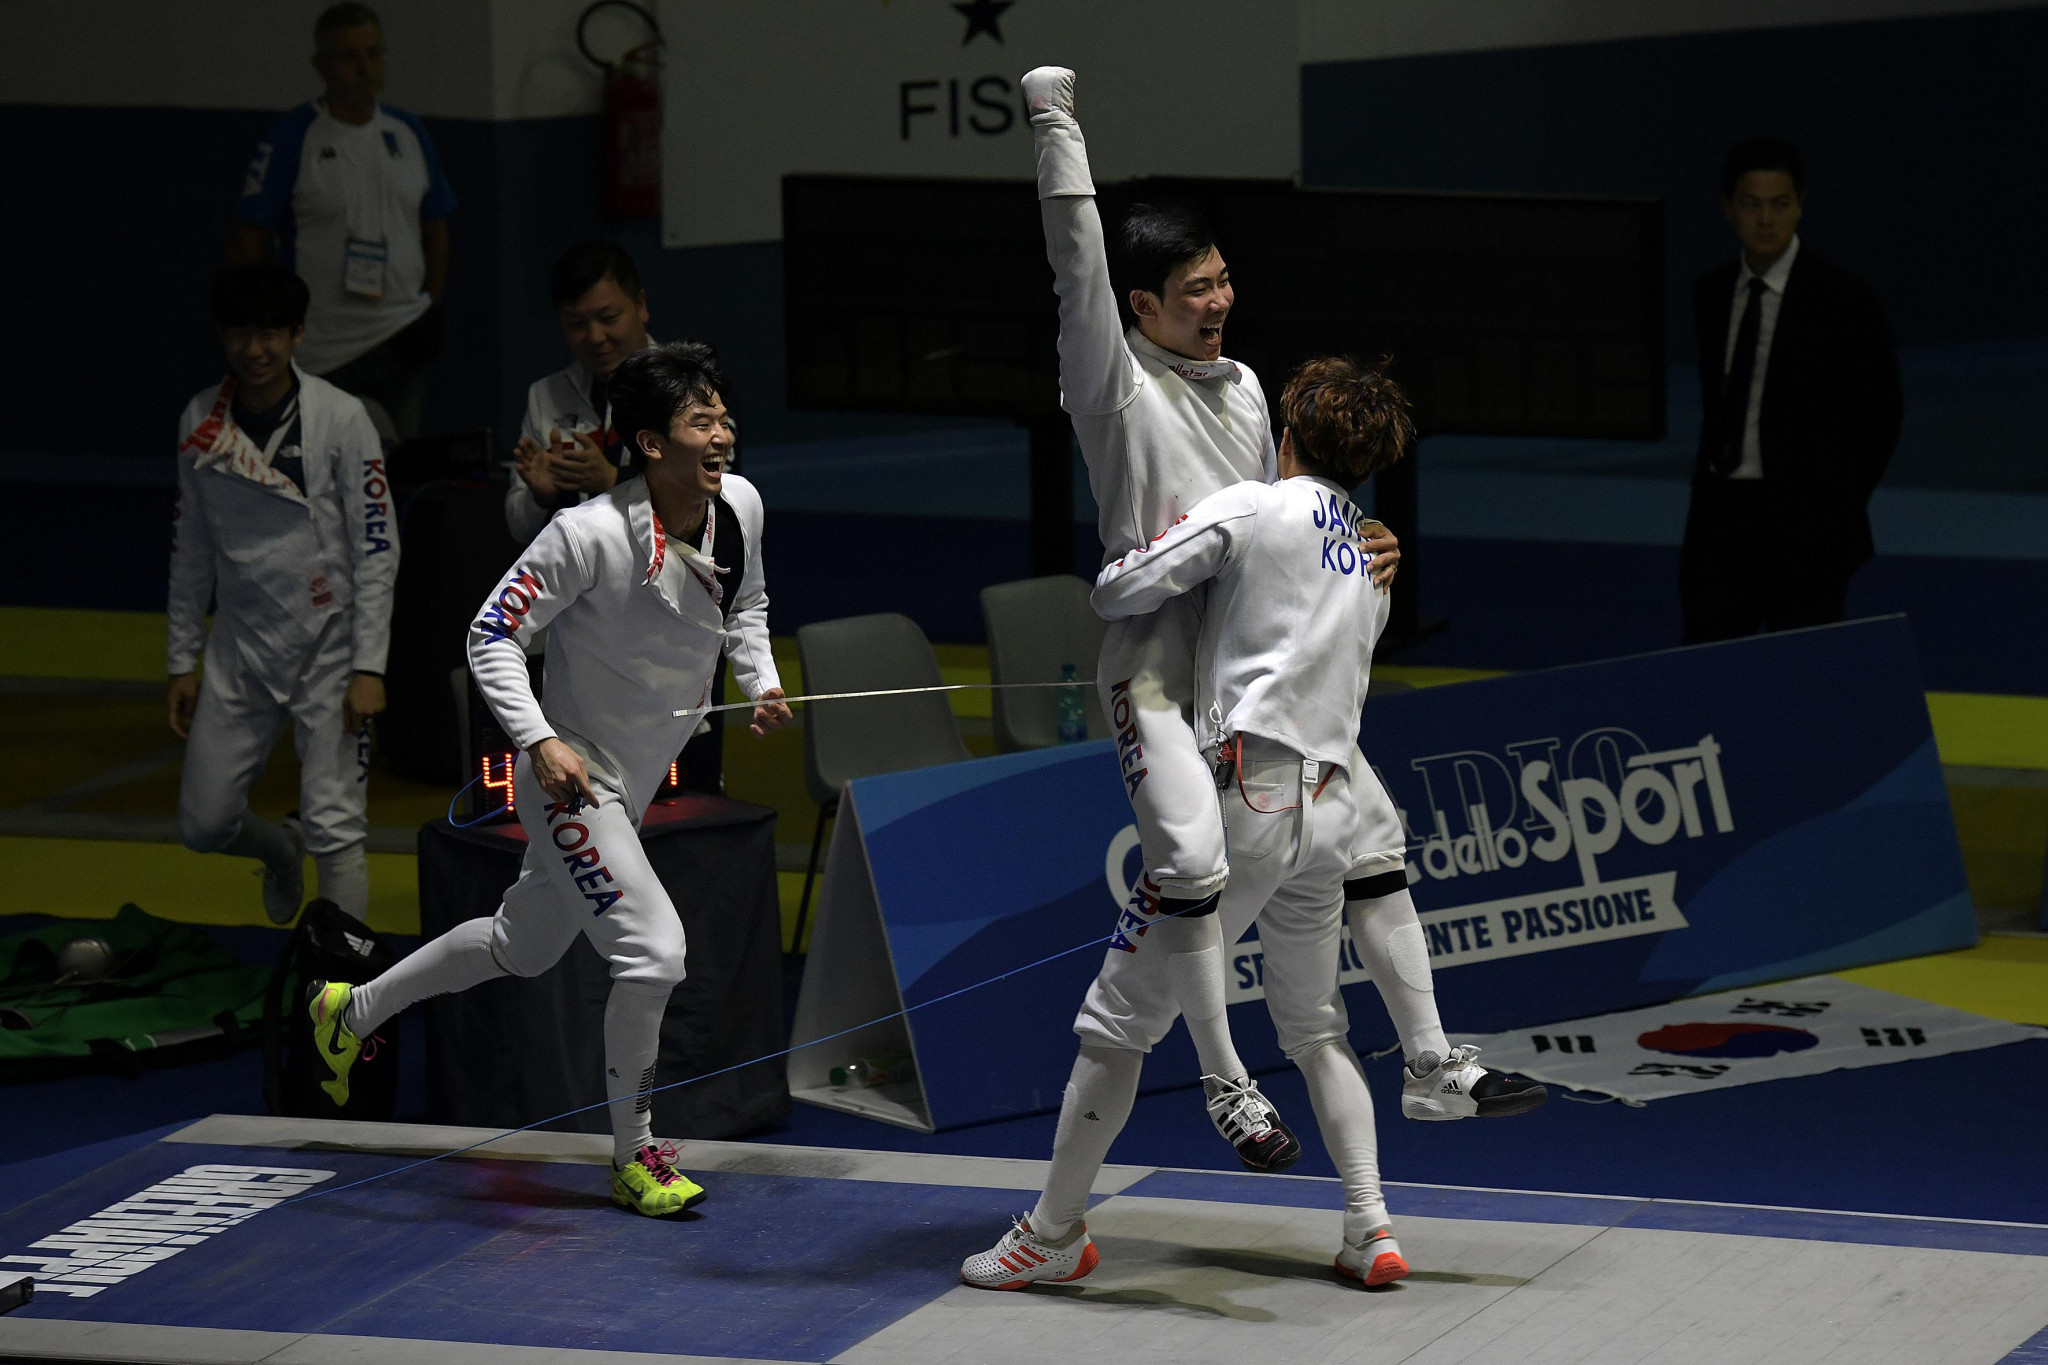 South Korea were the victors in the men's team épée ©Naples 2019